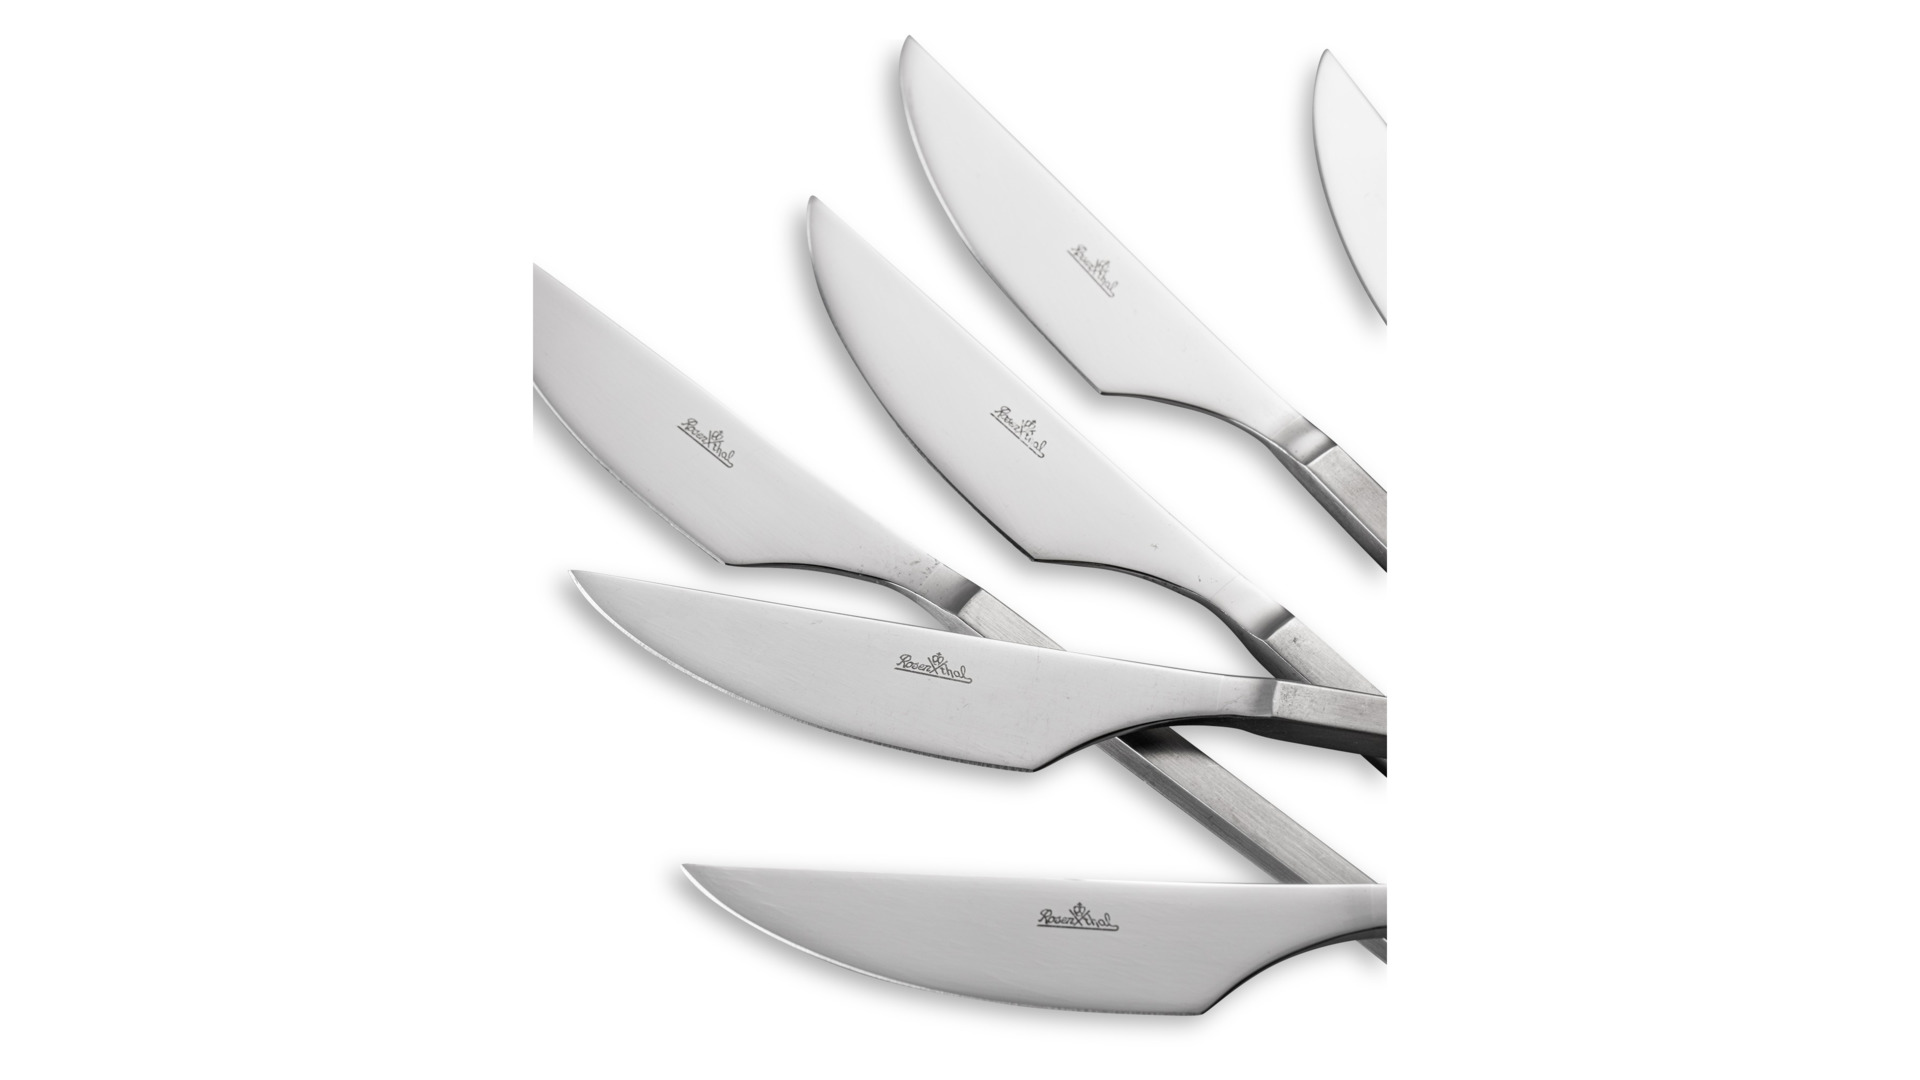 Набор ножей обеденных Rosenthal Диалог Матт 23 см, 6 шт